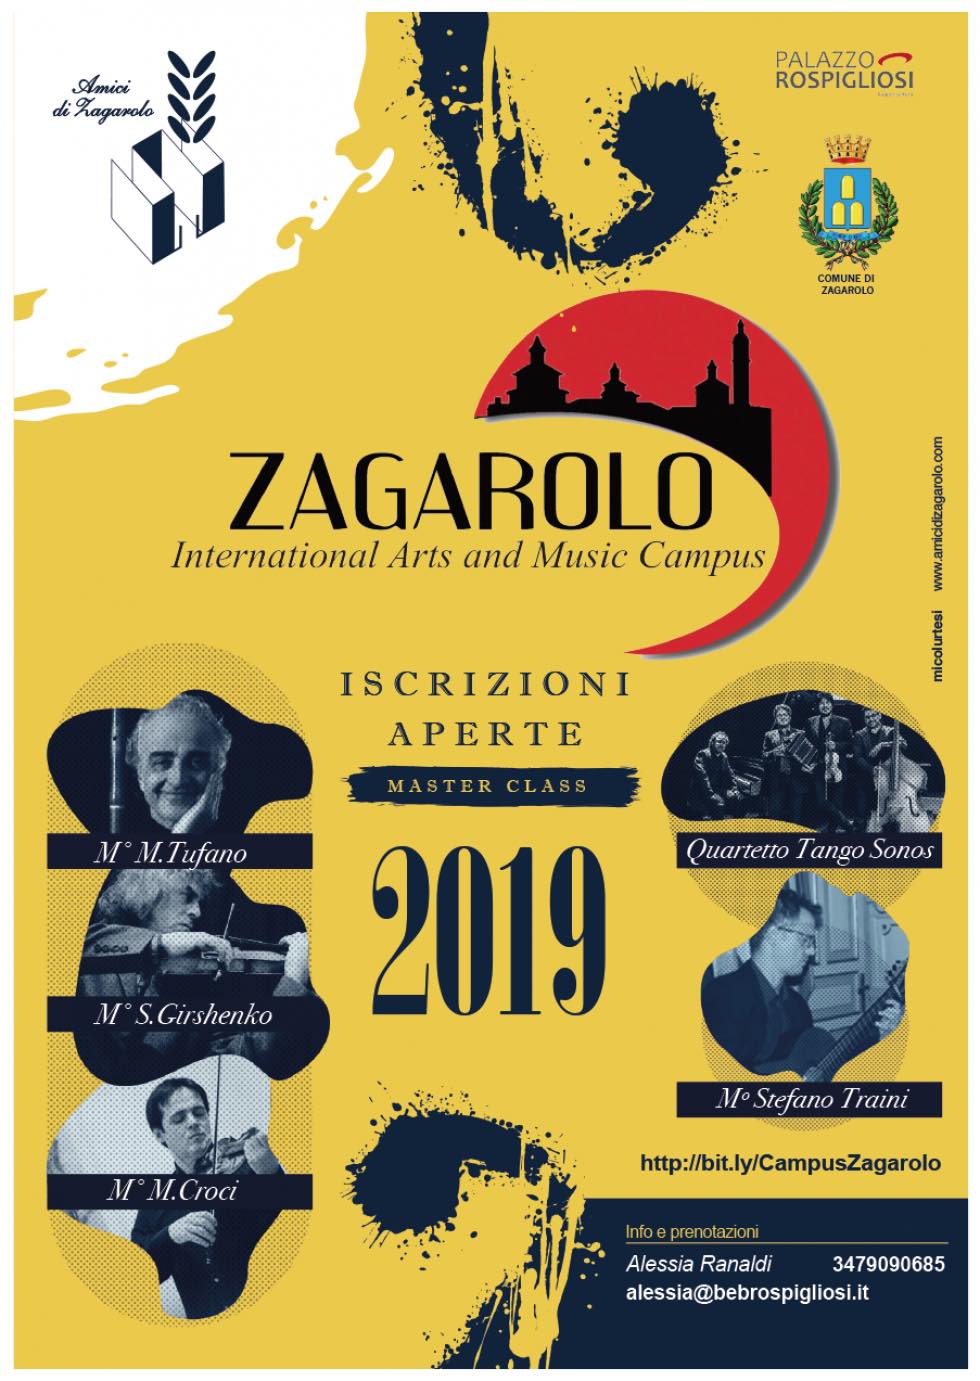 Zagarolo International Arts and Music Campus - Iscrizioni aperte al master class 2019